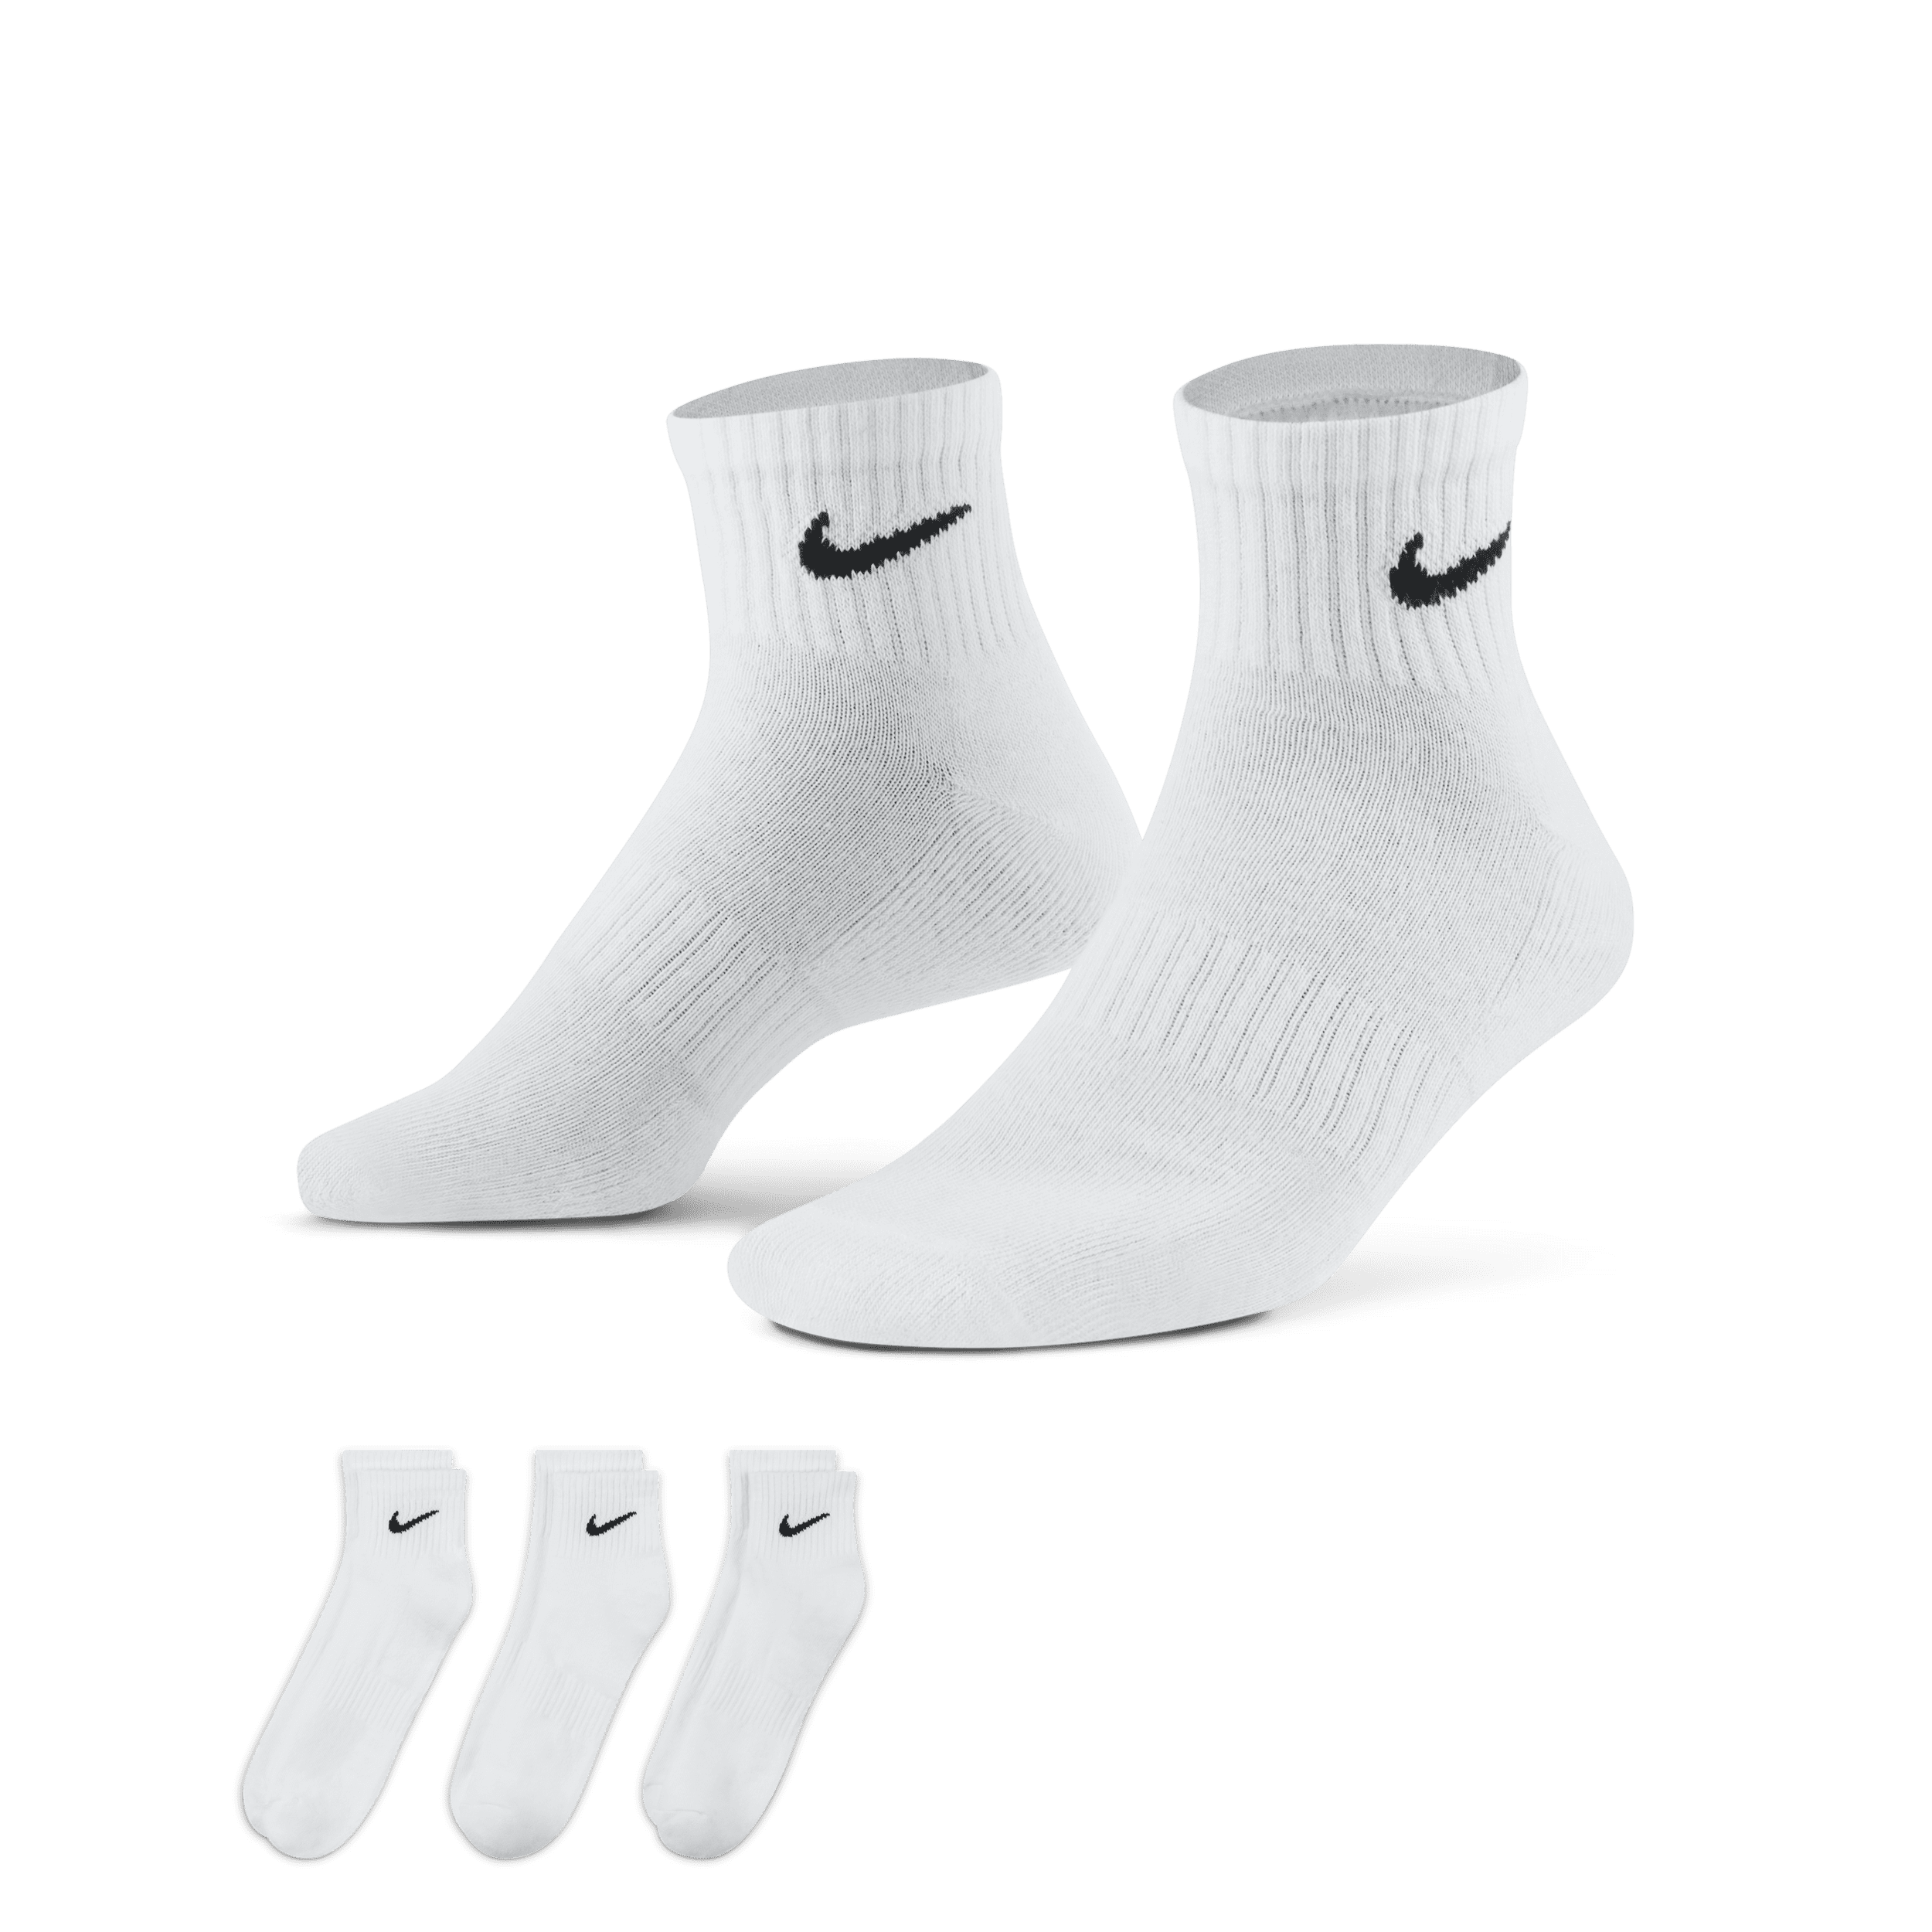 Calze da training alla caviglia Nike Everyday Cushioned (3 paia) - Bianco